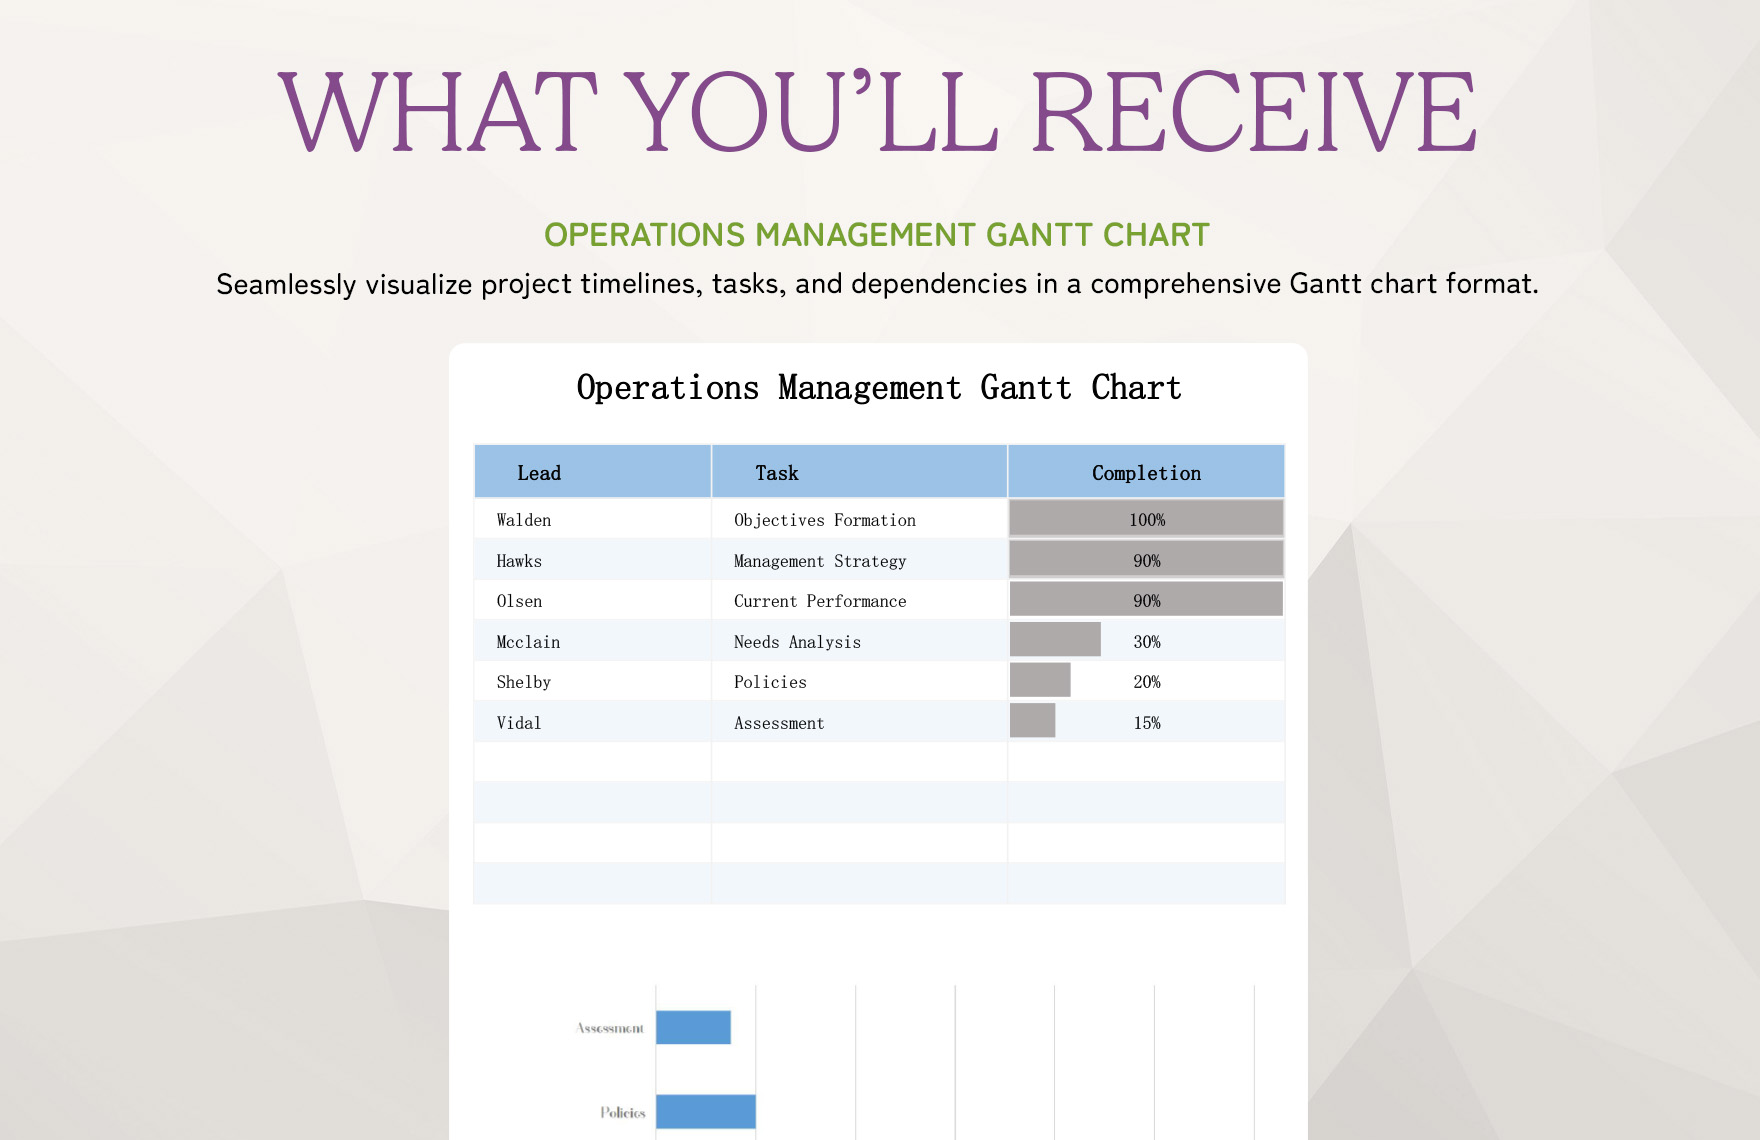 Operations Management Gantt Chart Template